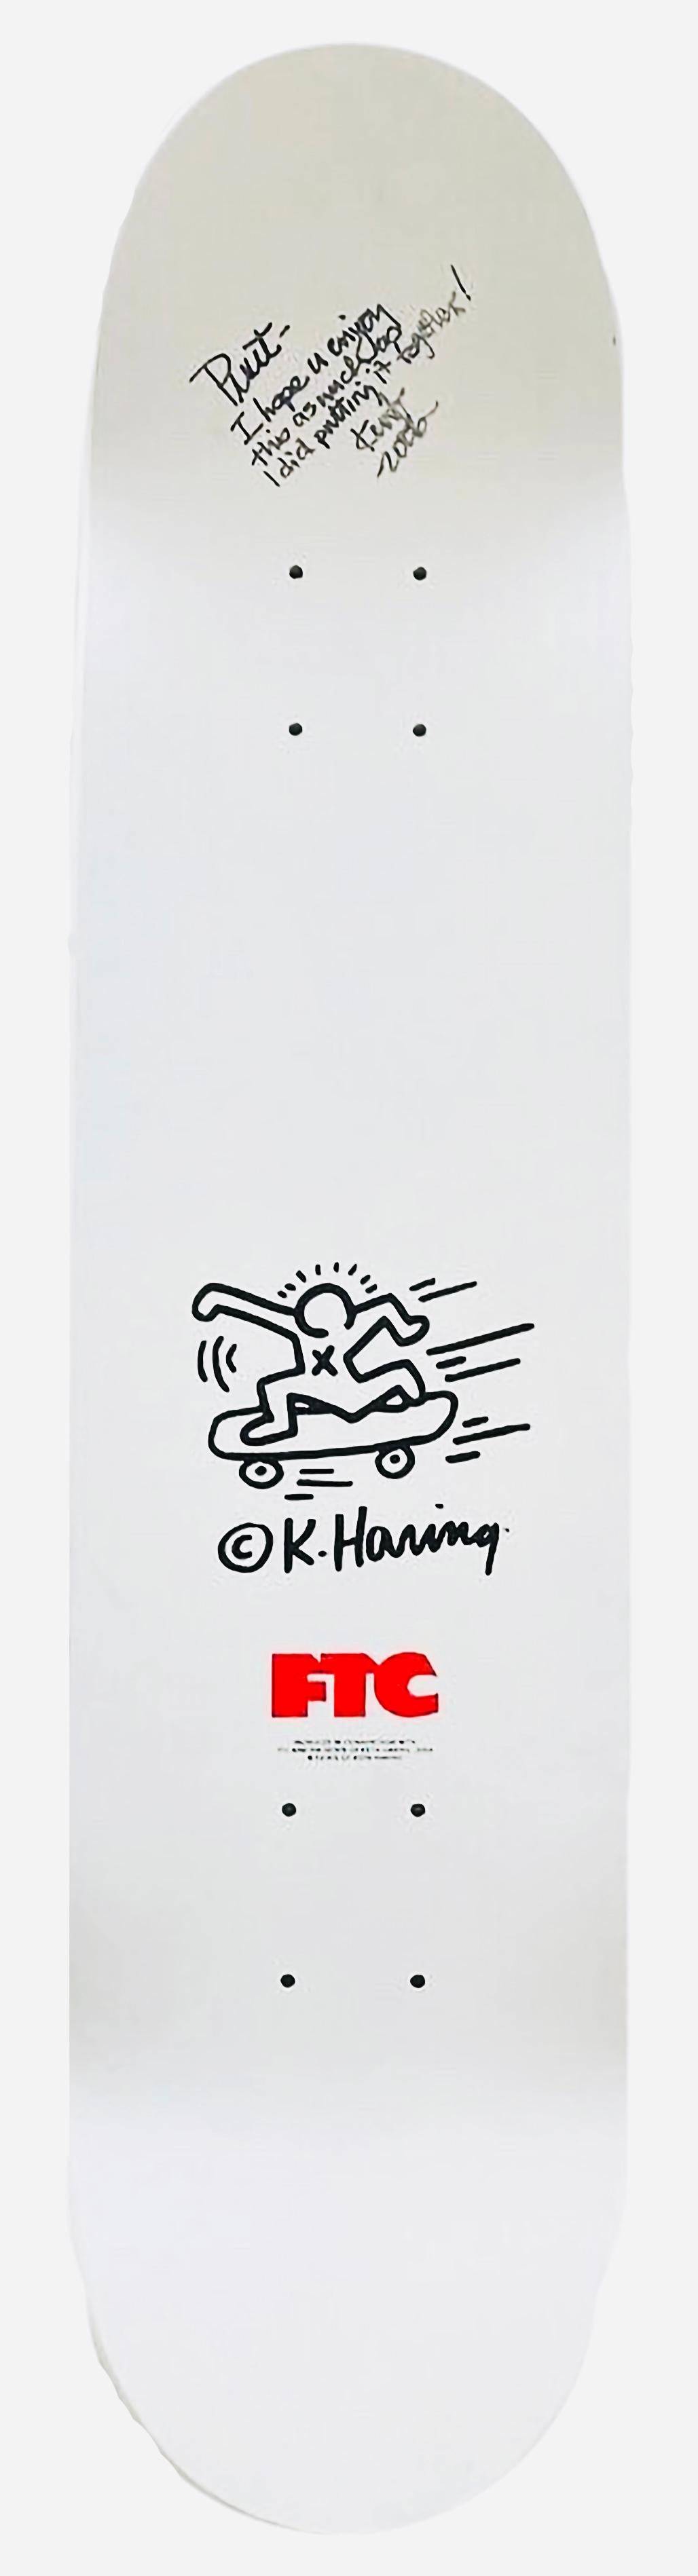 RARE vintage Keith Haring Skateboard Deck 2004:

Dieses zeitlose Keith Haring-Skateboarddeck in limitierter Auflage wurde 2004 in Zusammenarbeit zwischen der legendären Skateboardfirma FTC aus San Francisco und der Keith Haring Foundation